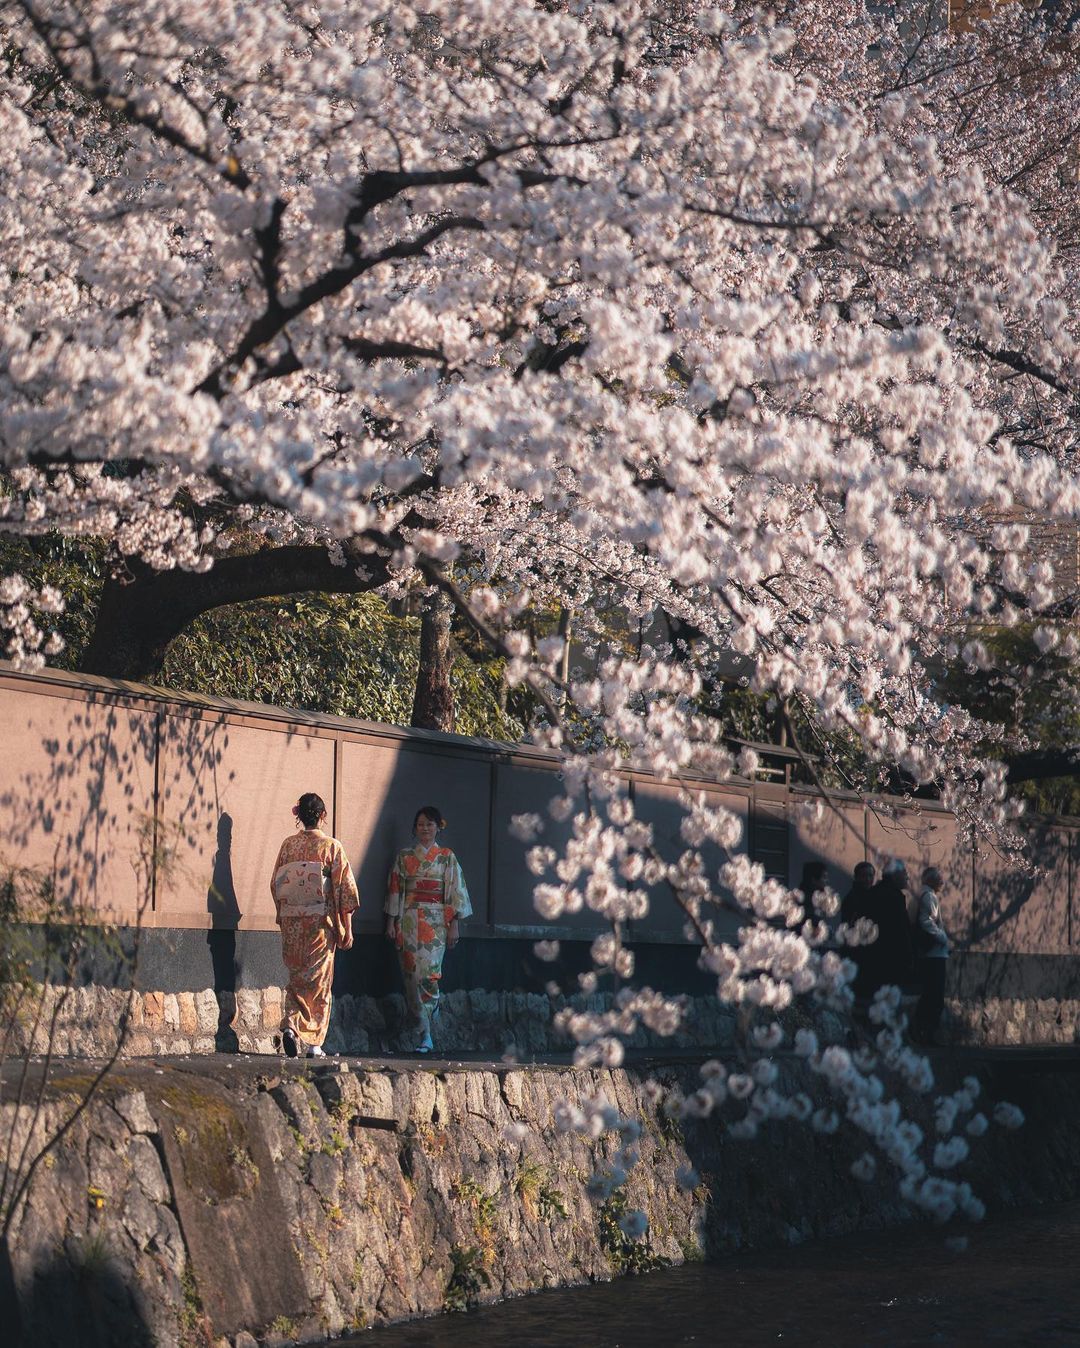 Непередаваемое очарование японских улиц на снимках Пэта Кея страна восходящего солнца,тревел-фото,Япония